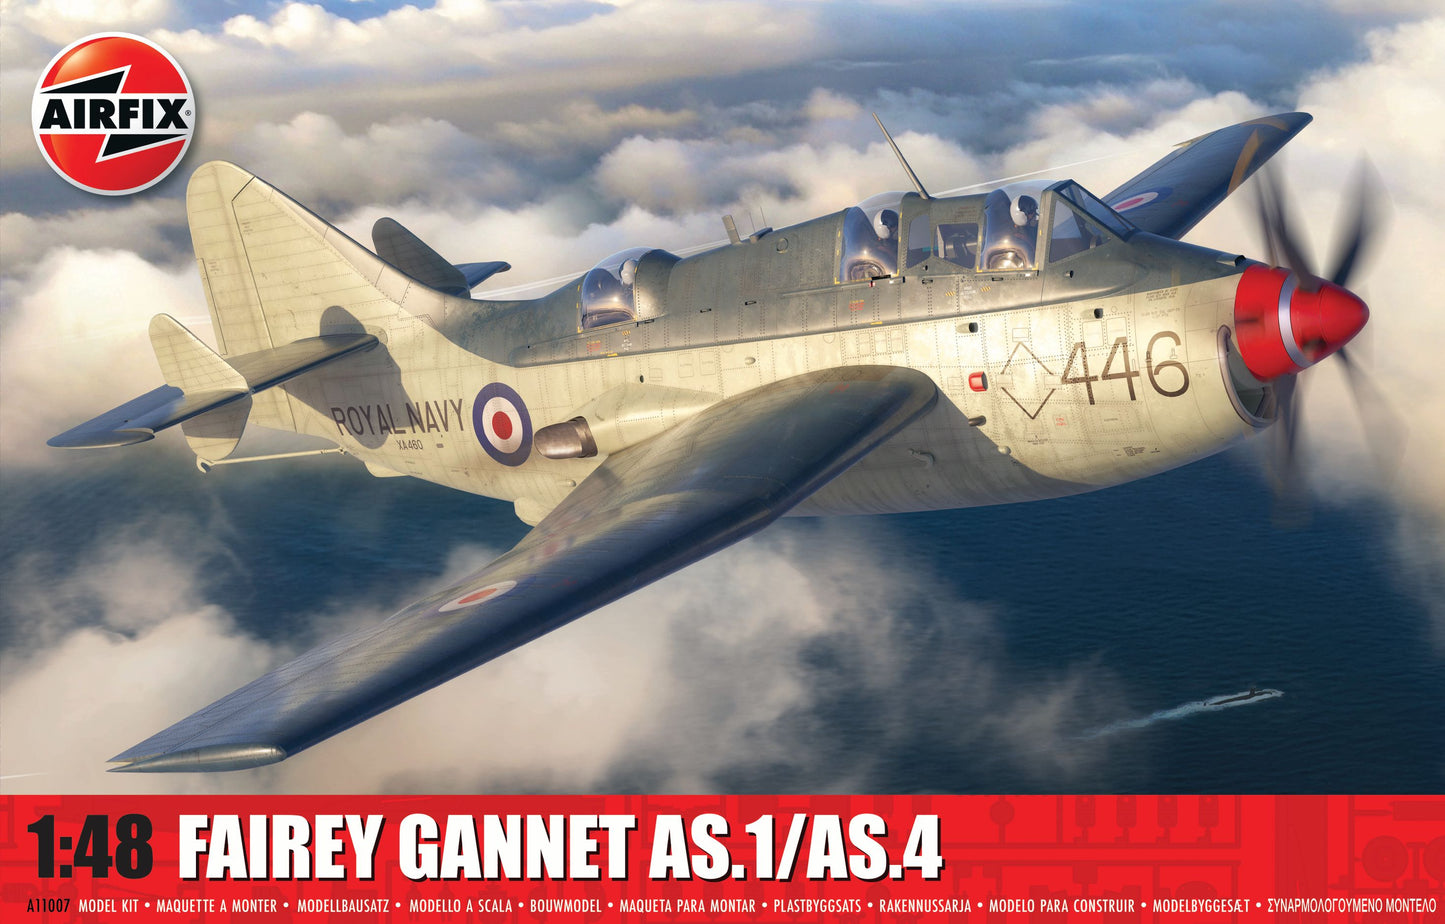 Airfix 1/48th scale Fairey Gannet